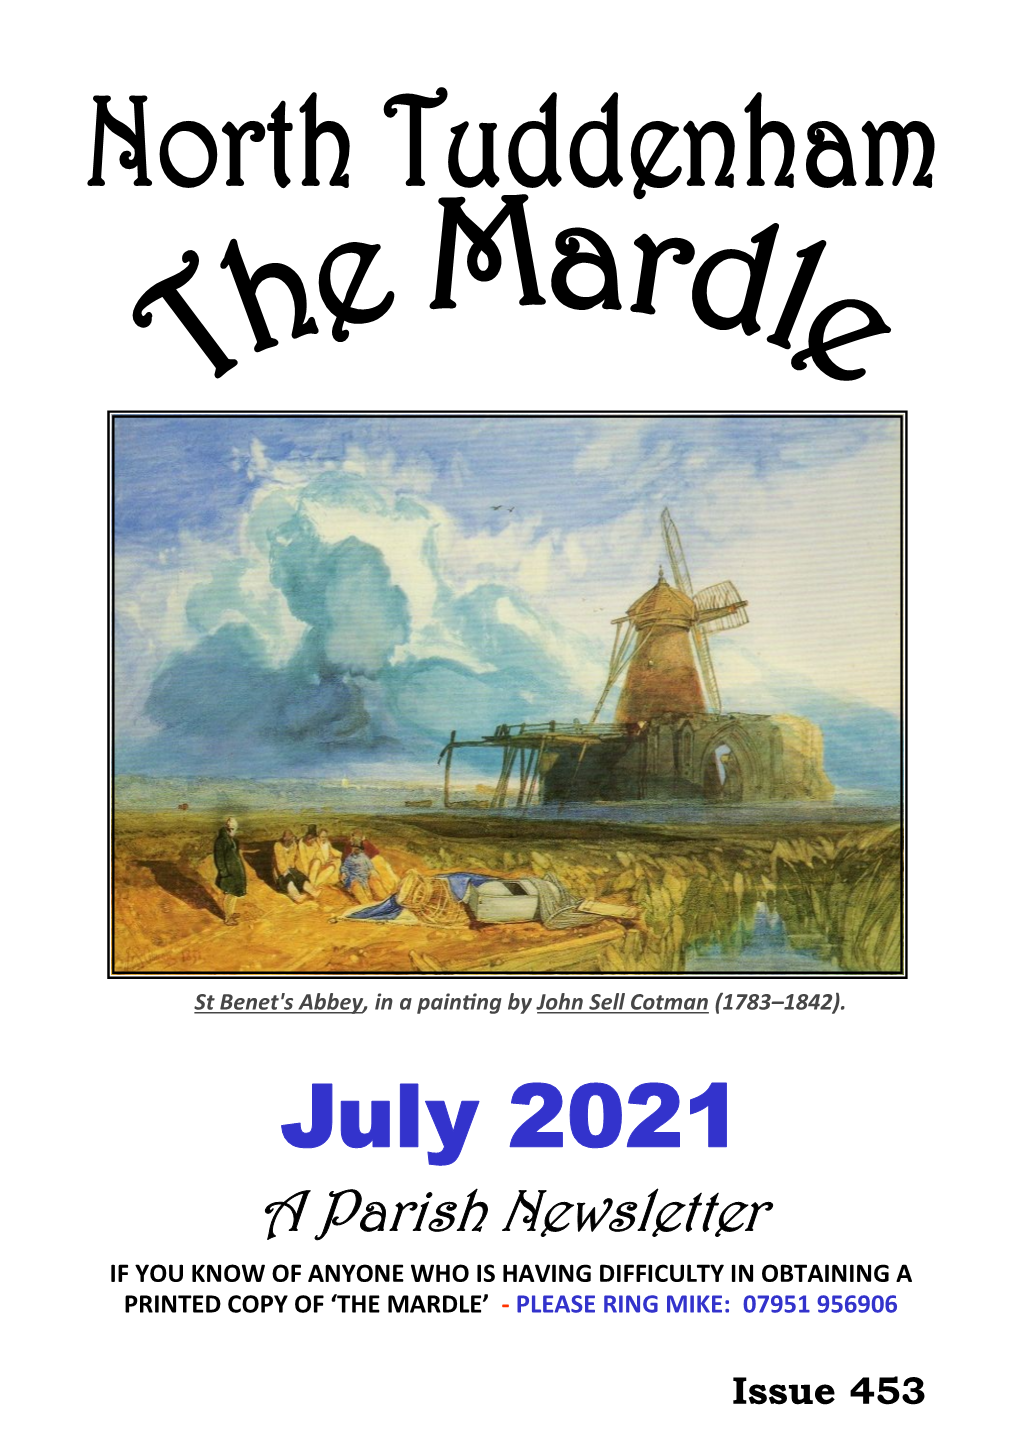 North Tuddenham Mardle for July 2021